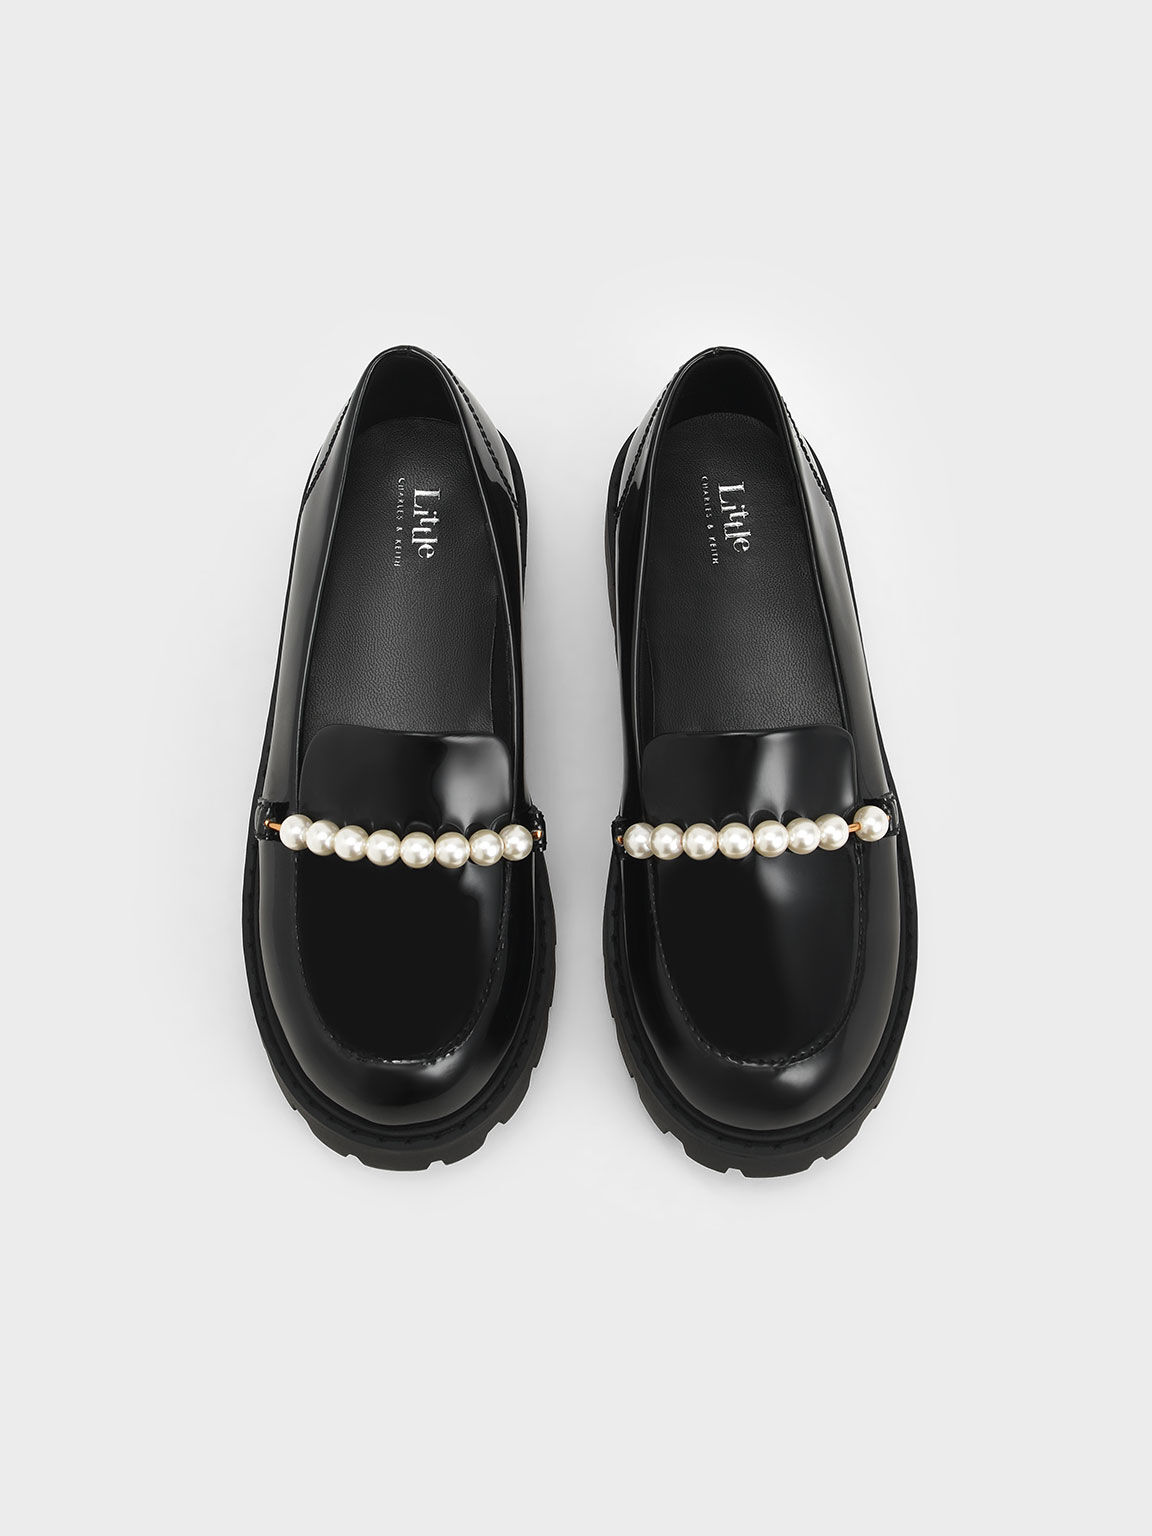 Girls' Patent Pearl-Embellished Loafers, Black, hi-res